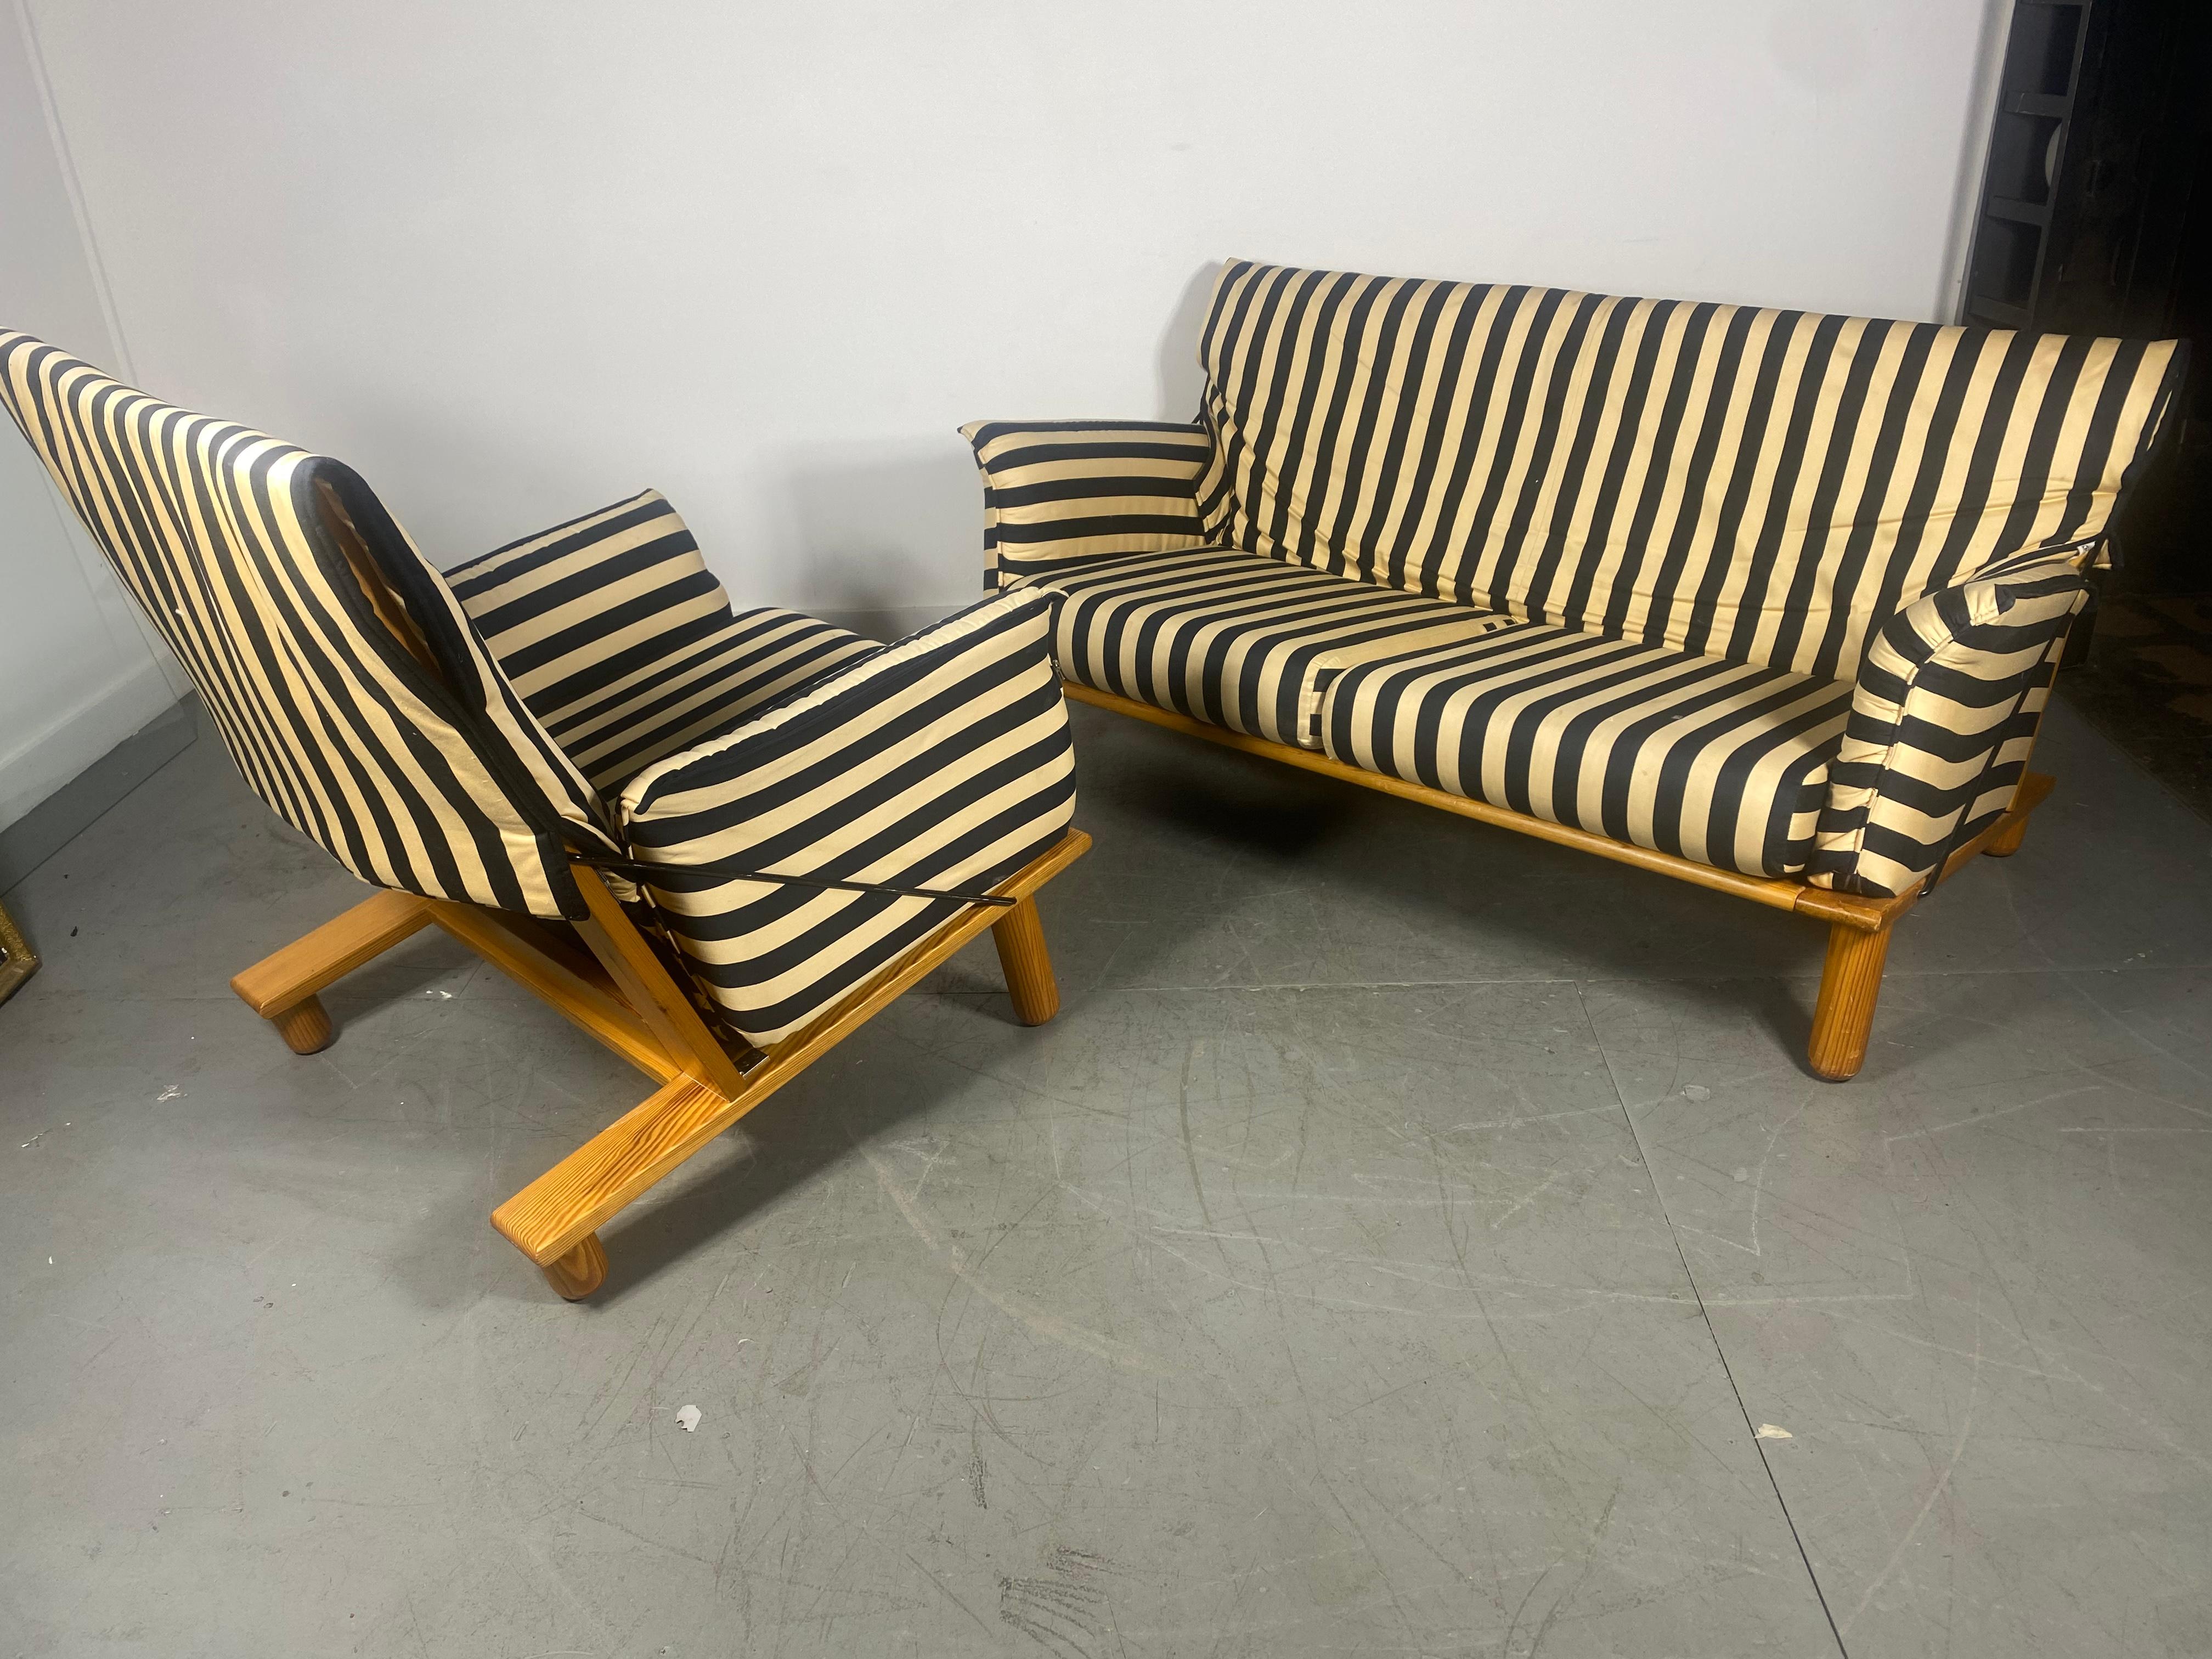 Frühes Ikea Sofa und Stuhl entworfen von Tord Bjorklund, Schweden...Wunderbares Design..GROSSE QUALITÄT UND KONSTRUKTION...  Stuhl Maßnahmen 30 